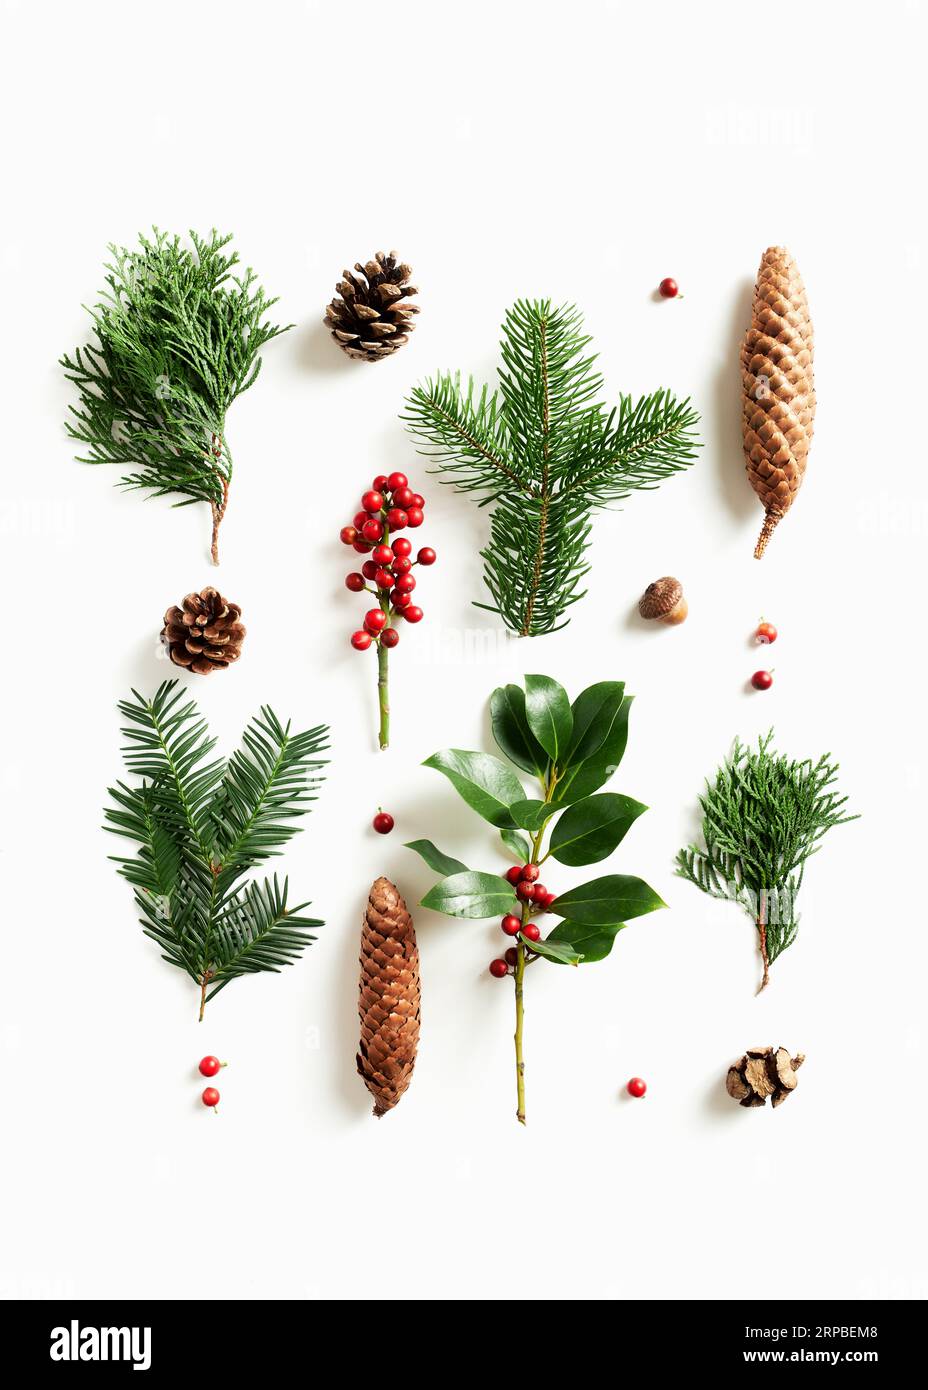 Sammlung verschiedener Koniferen und Kegel auf weißem Hintergrund. Flach liegend Weihnachtskomposition mit winterlicher Naturdekoration. Stockfoto